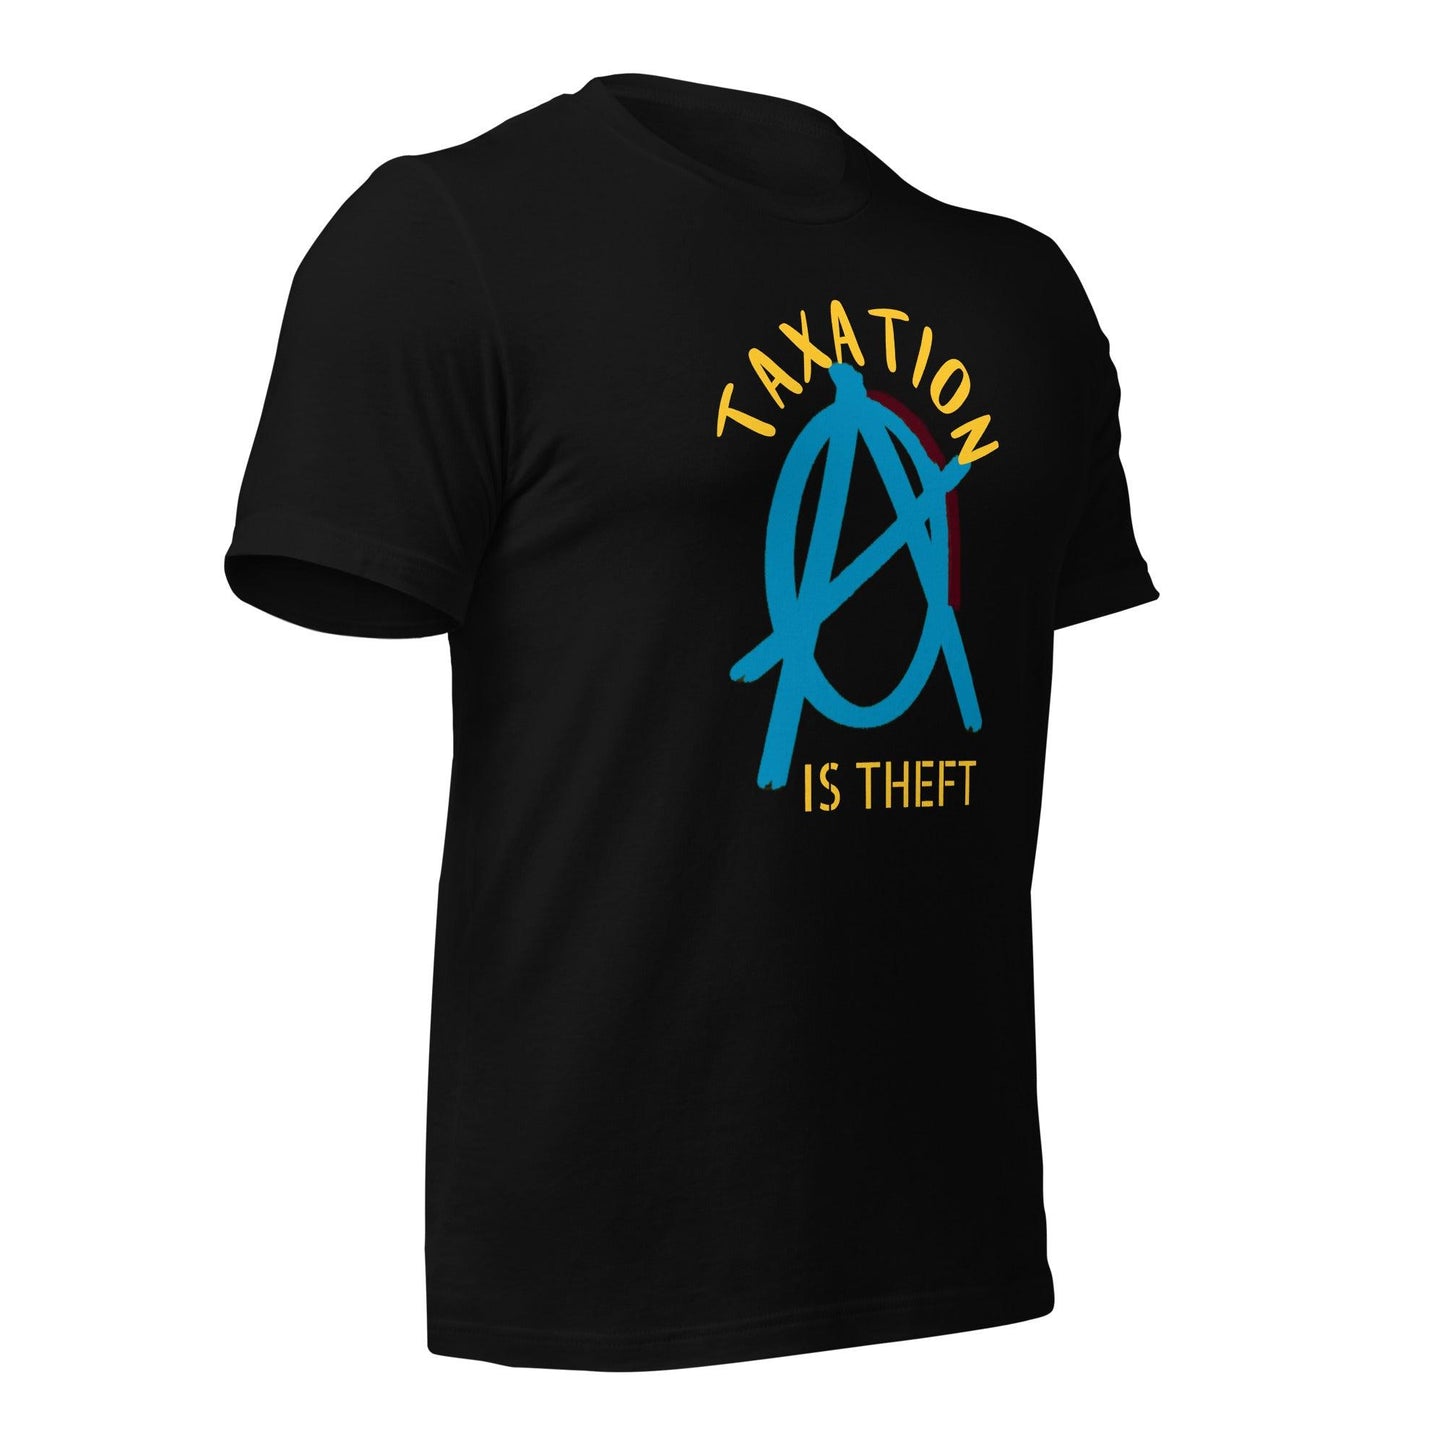 Anarchy Wear Blue "Taxation Is Theft" Unisex t-shirt - AnarchyWear